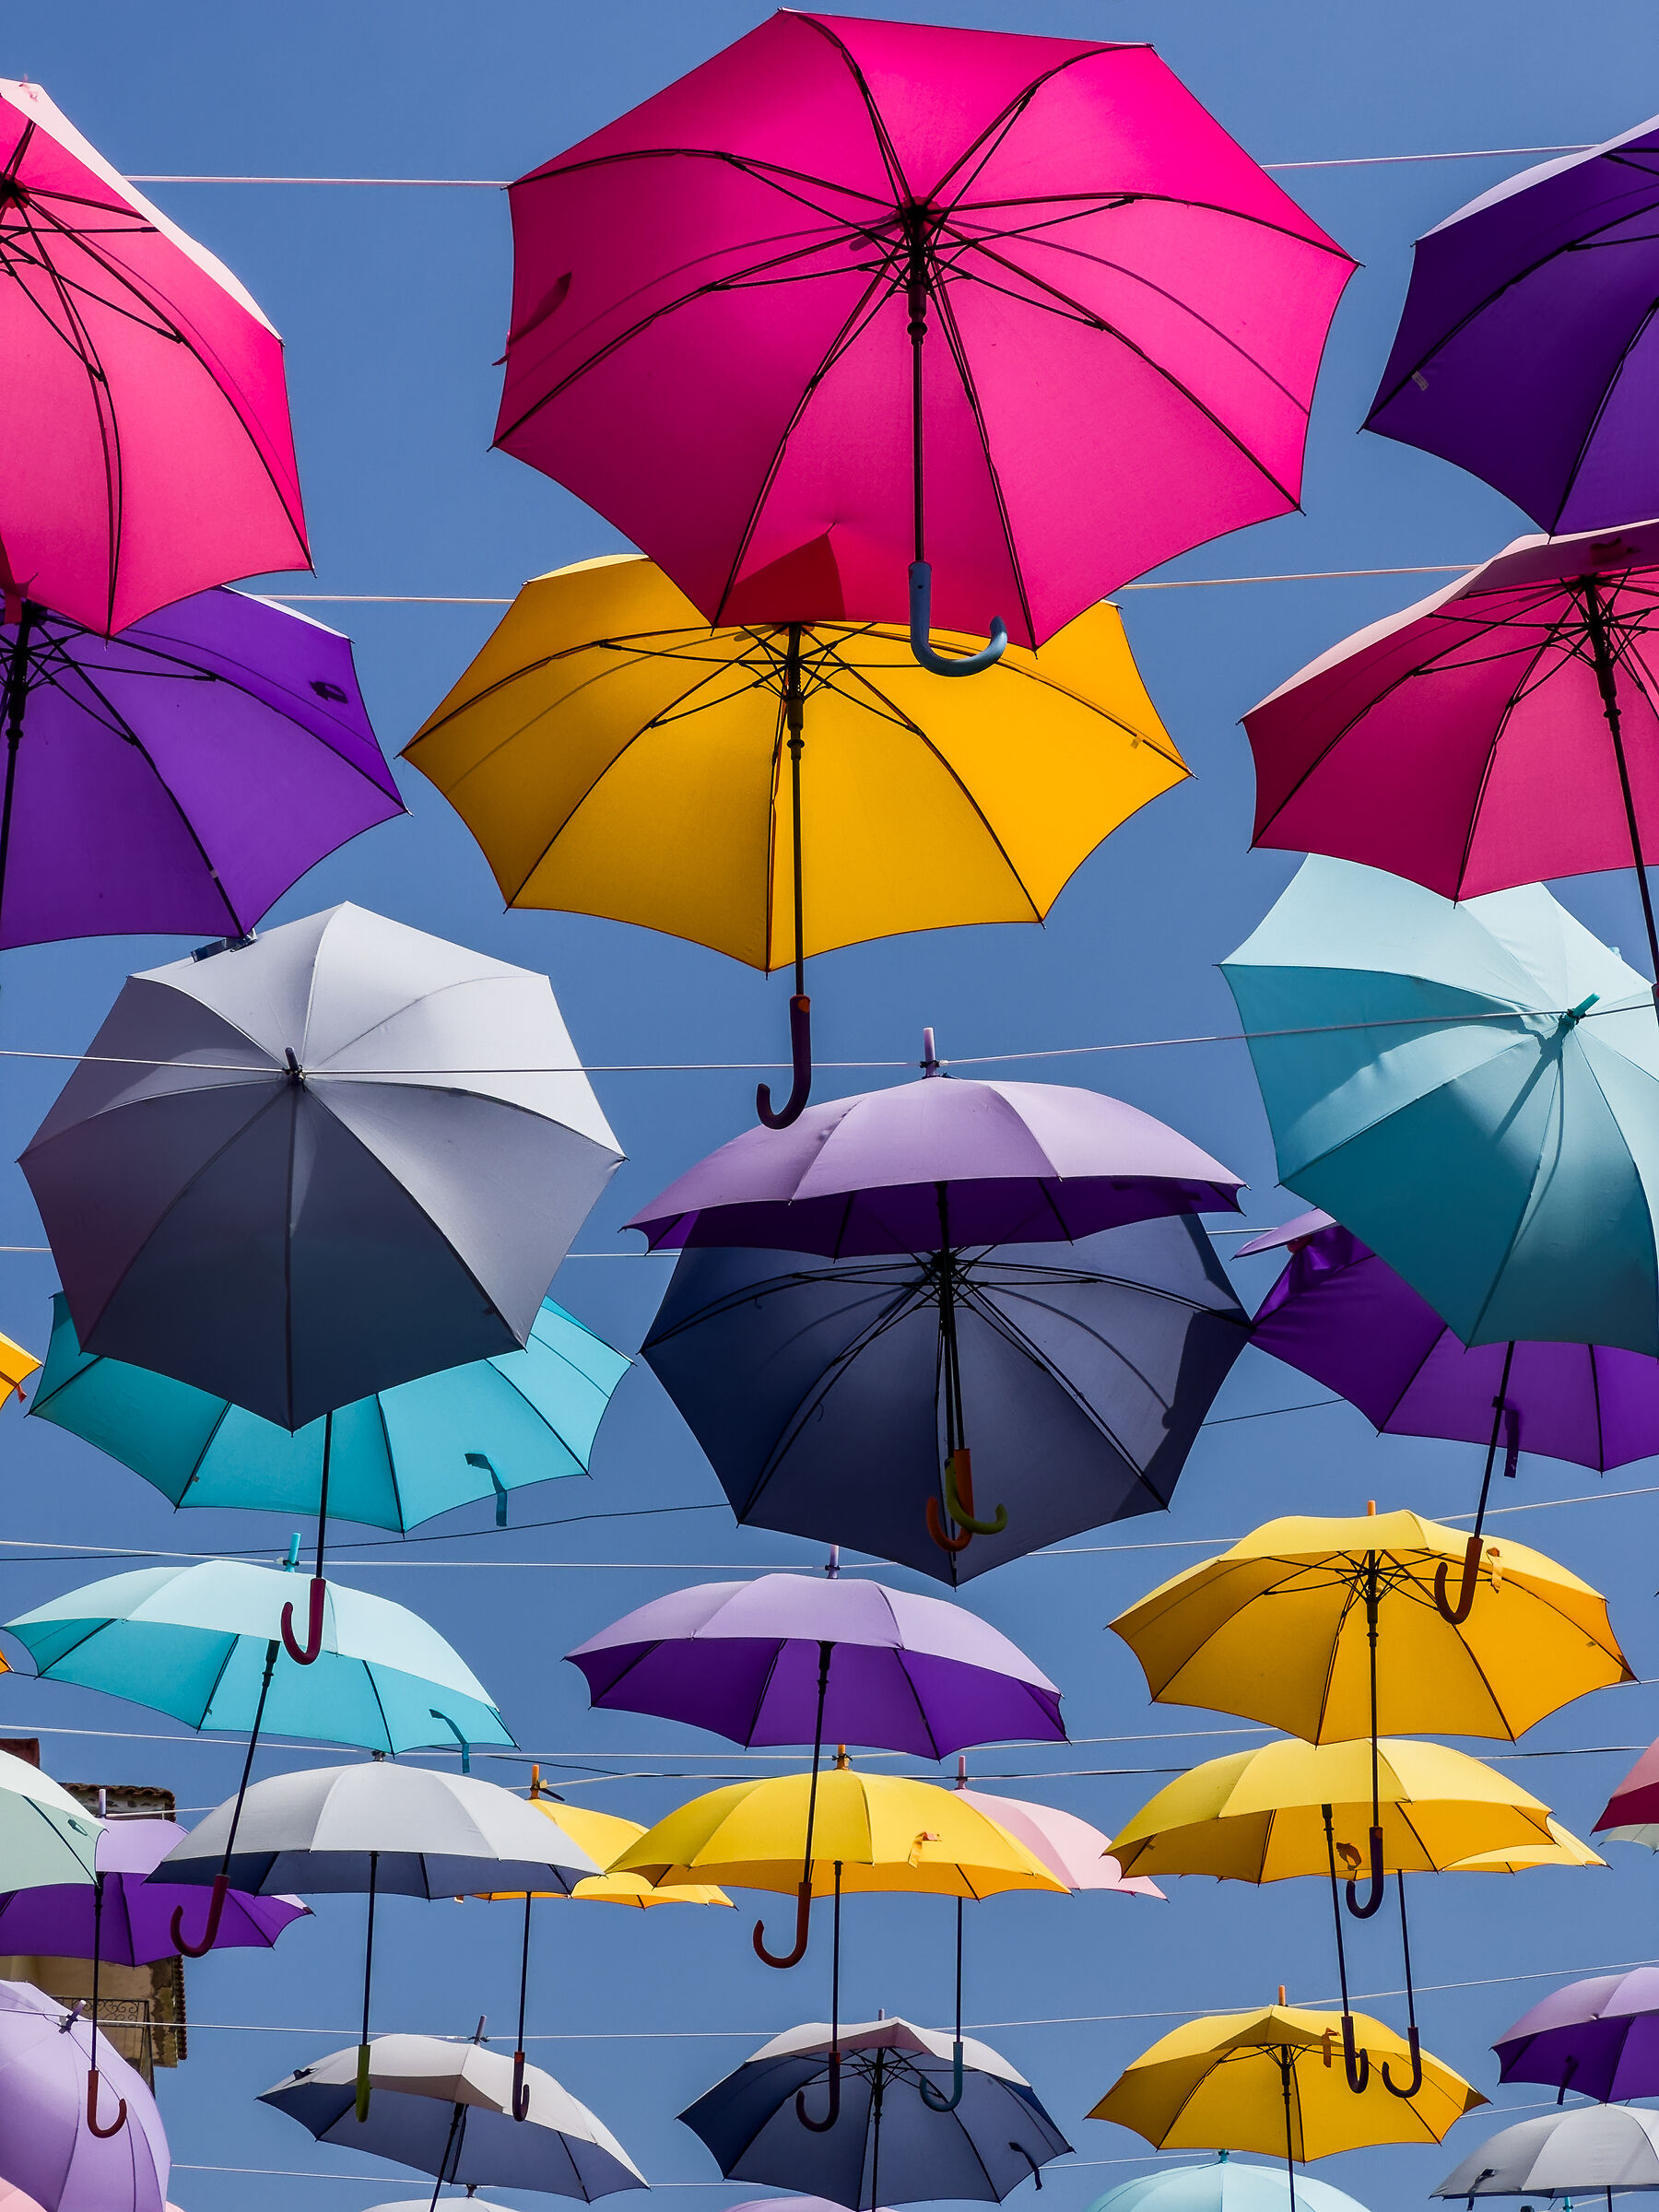 Danze aeree di ombrelli sospesi...